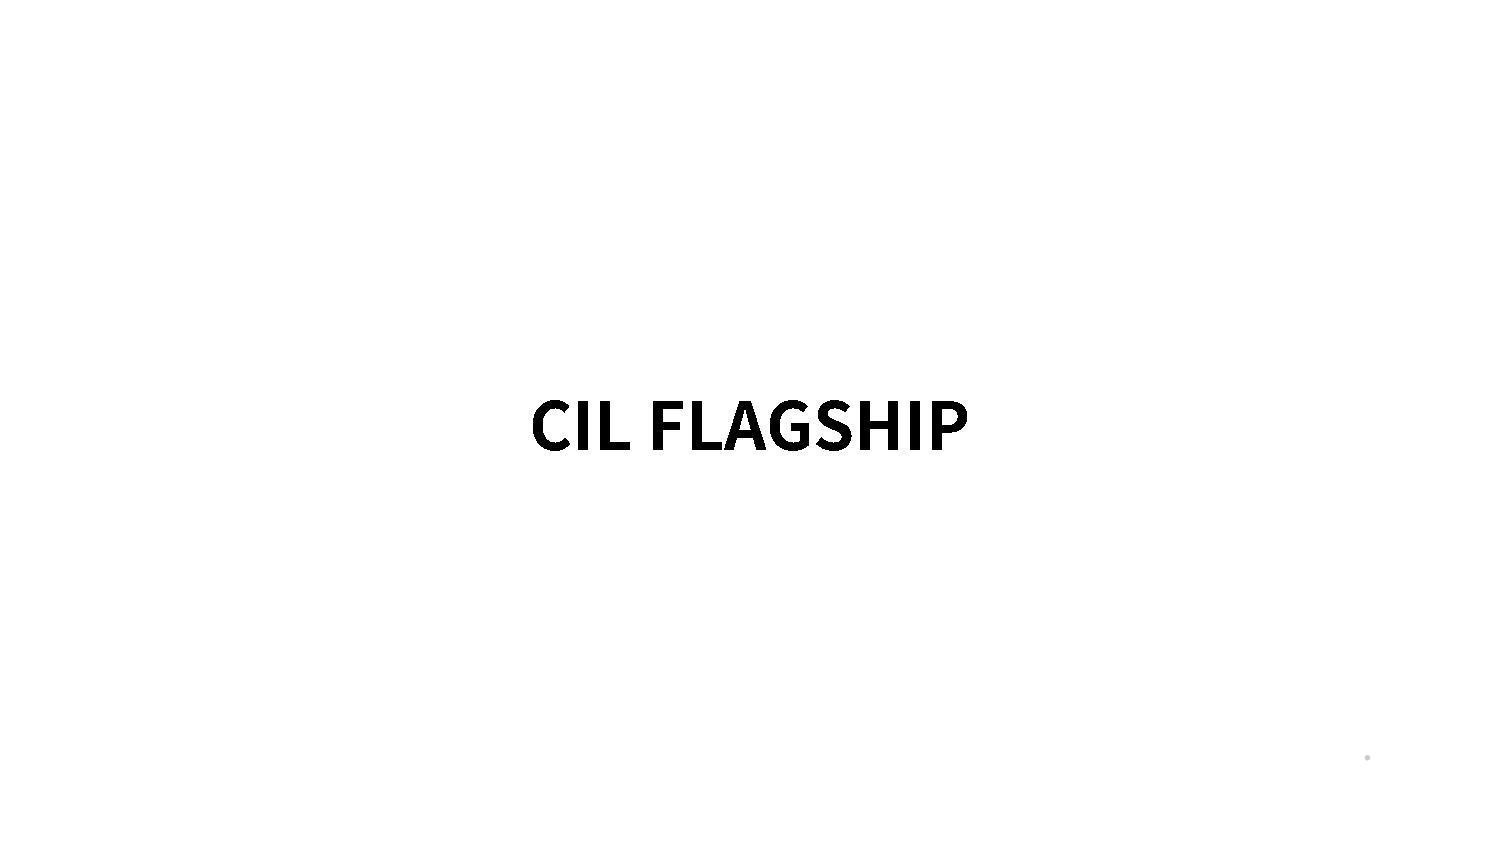 CIL FLAGSHIP